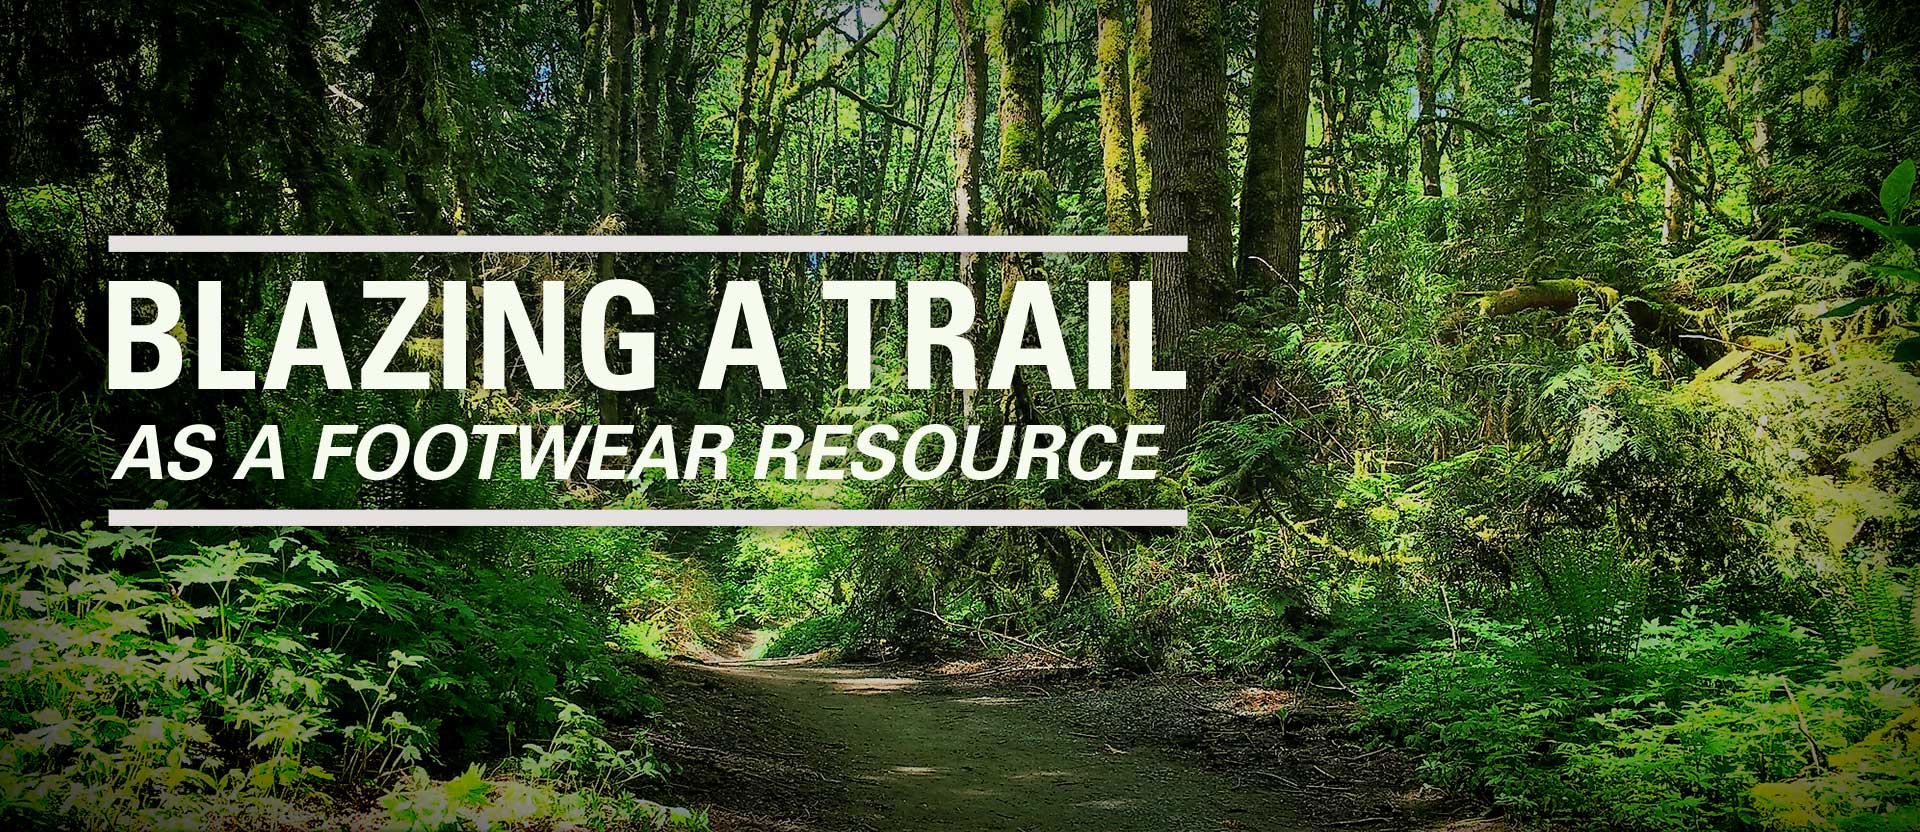 Blazing a trail as a footwear resource